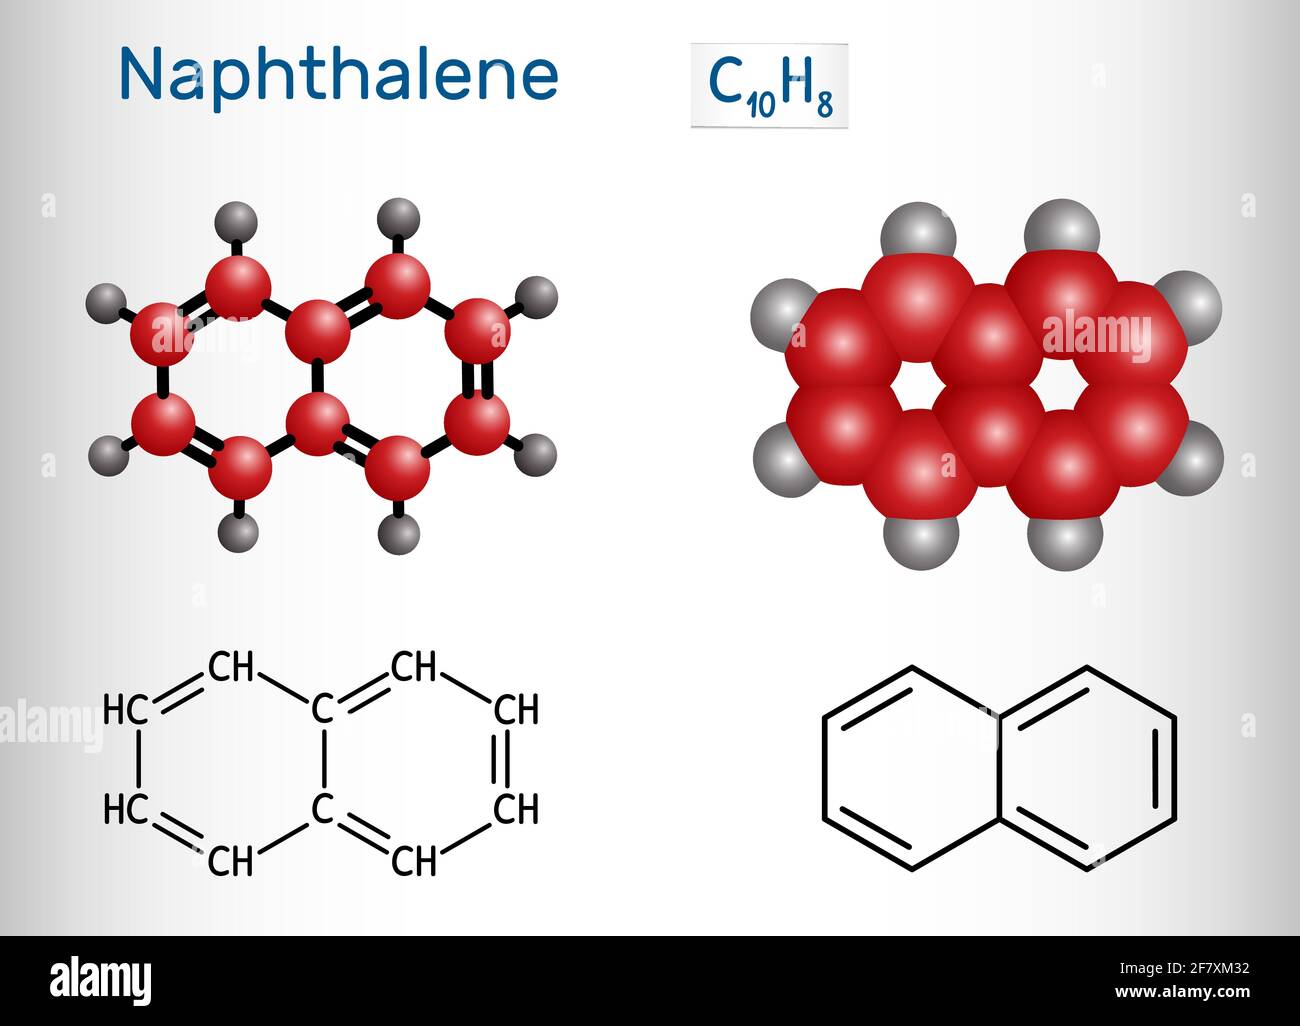 Naphthalin-Molekül. Es handelt sich um aromatischen Kohlenwasserstoff, der aus zwei geschmolzenen Benzolringen besteht. Strukturelle chemische Formel und Molekülmodell. Vektorgrafiken Stock Vektor